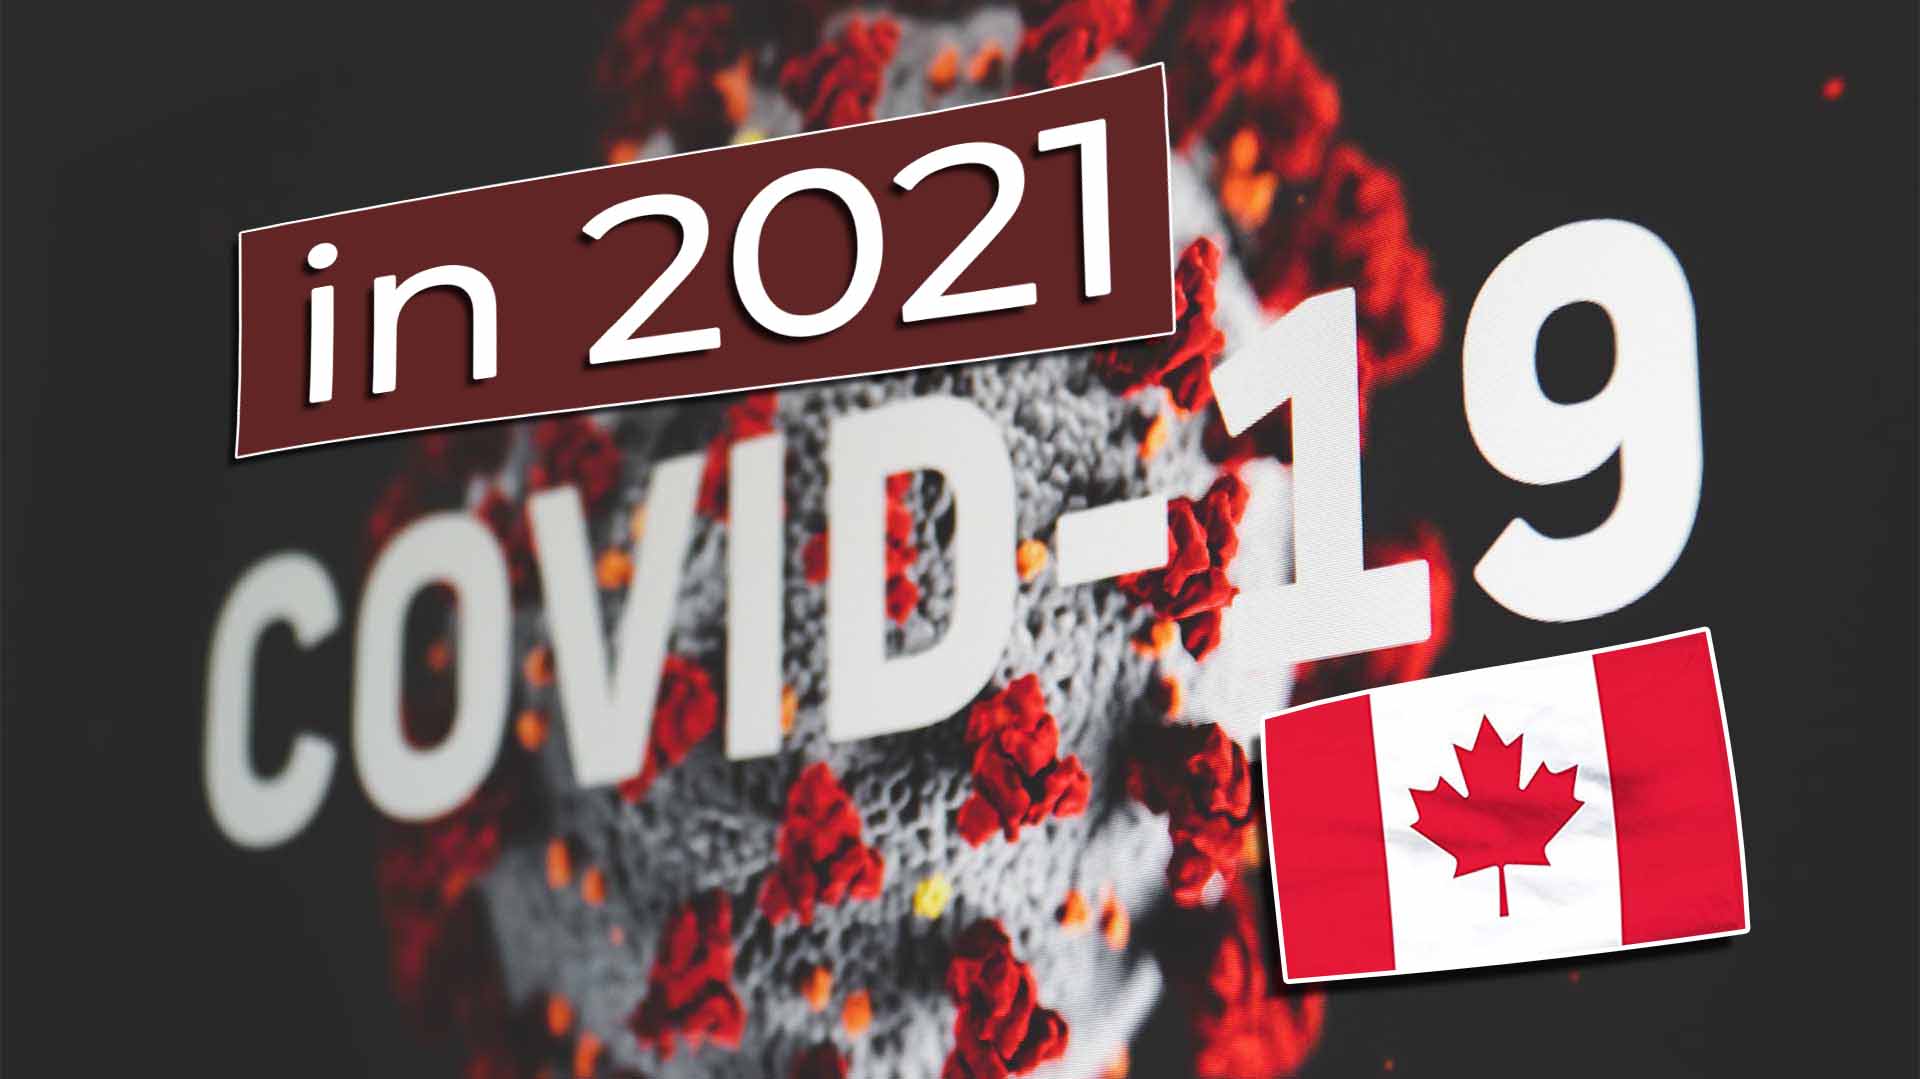 Work and Travel Kanada Coronavirus Covid-19 in 2021 - Cover